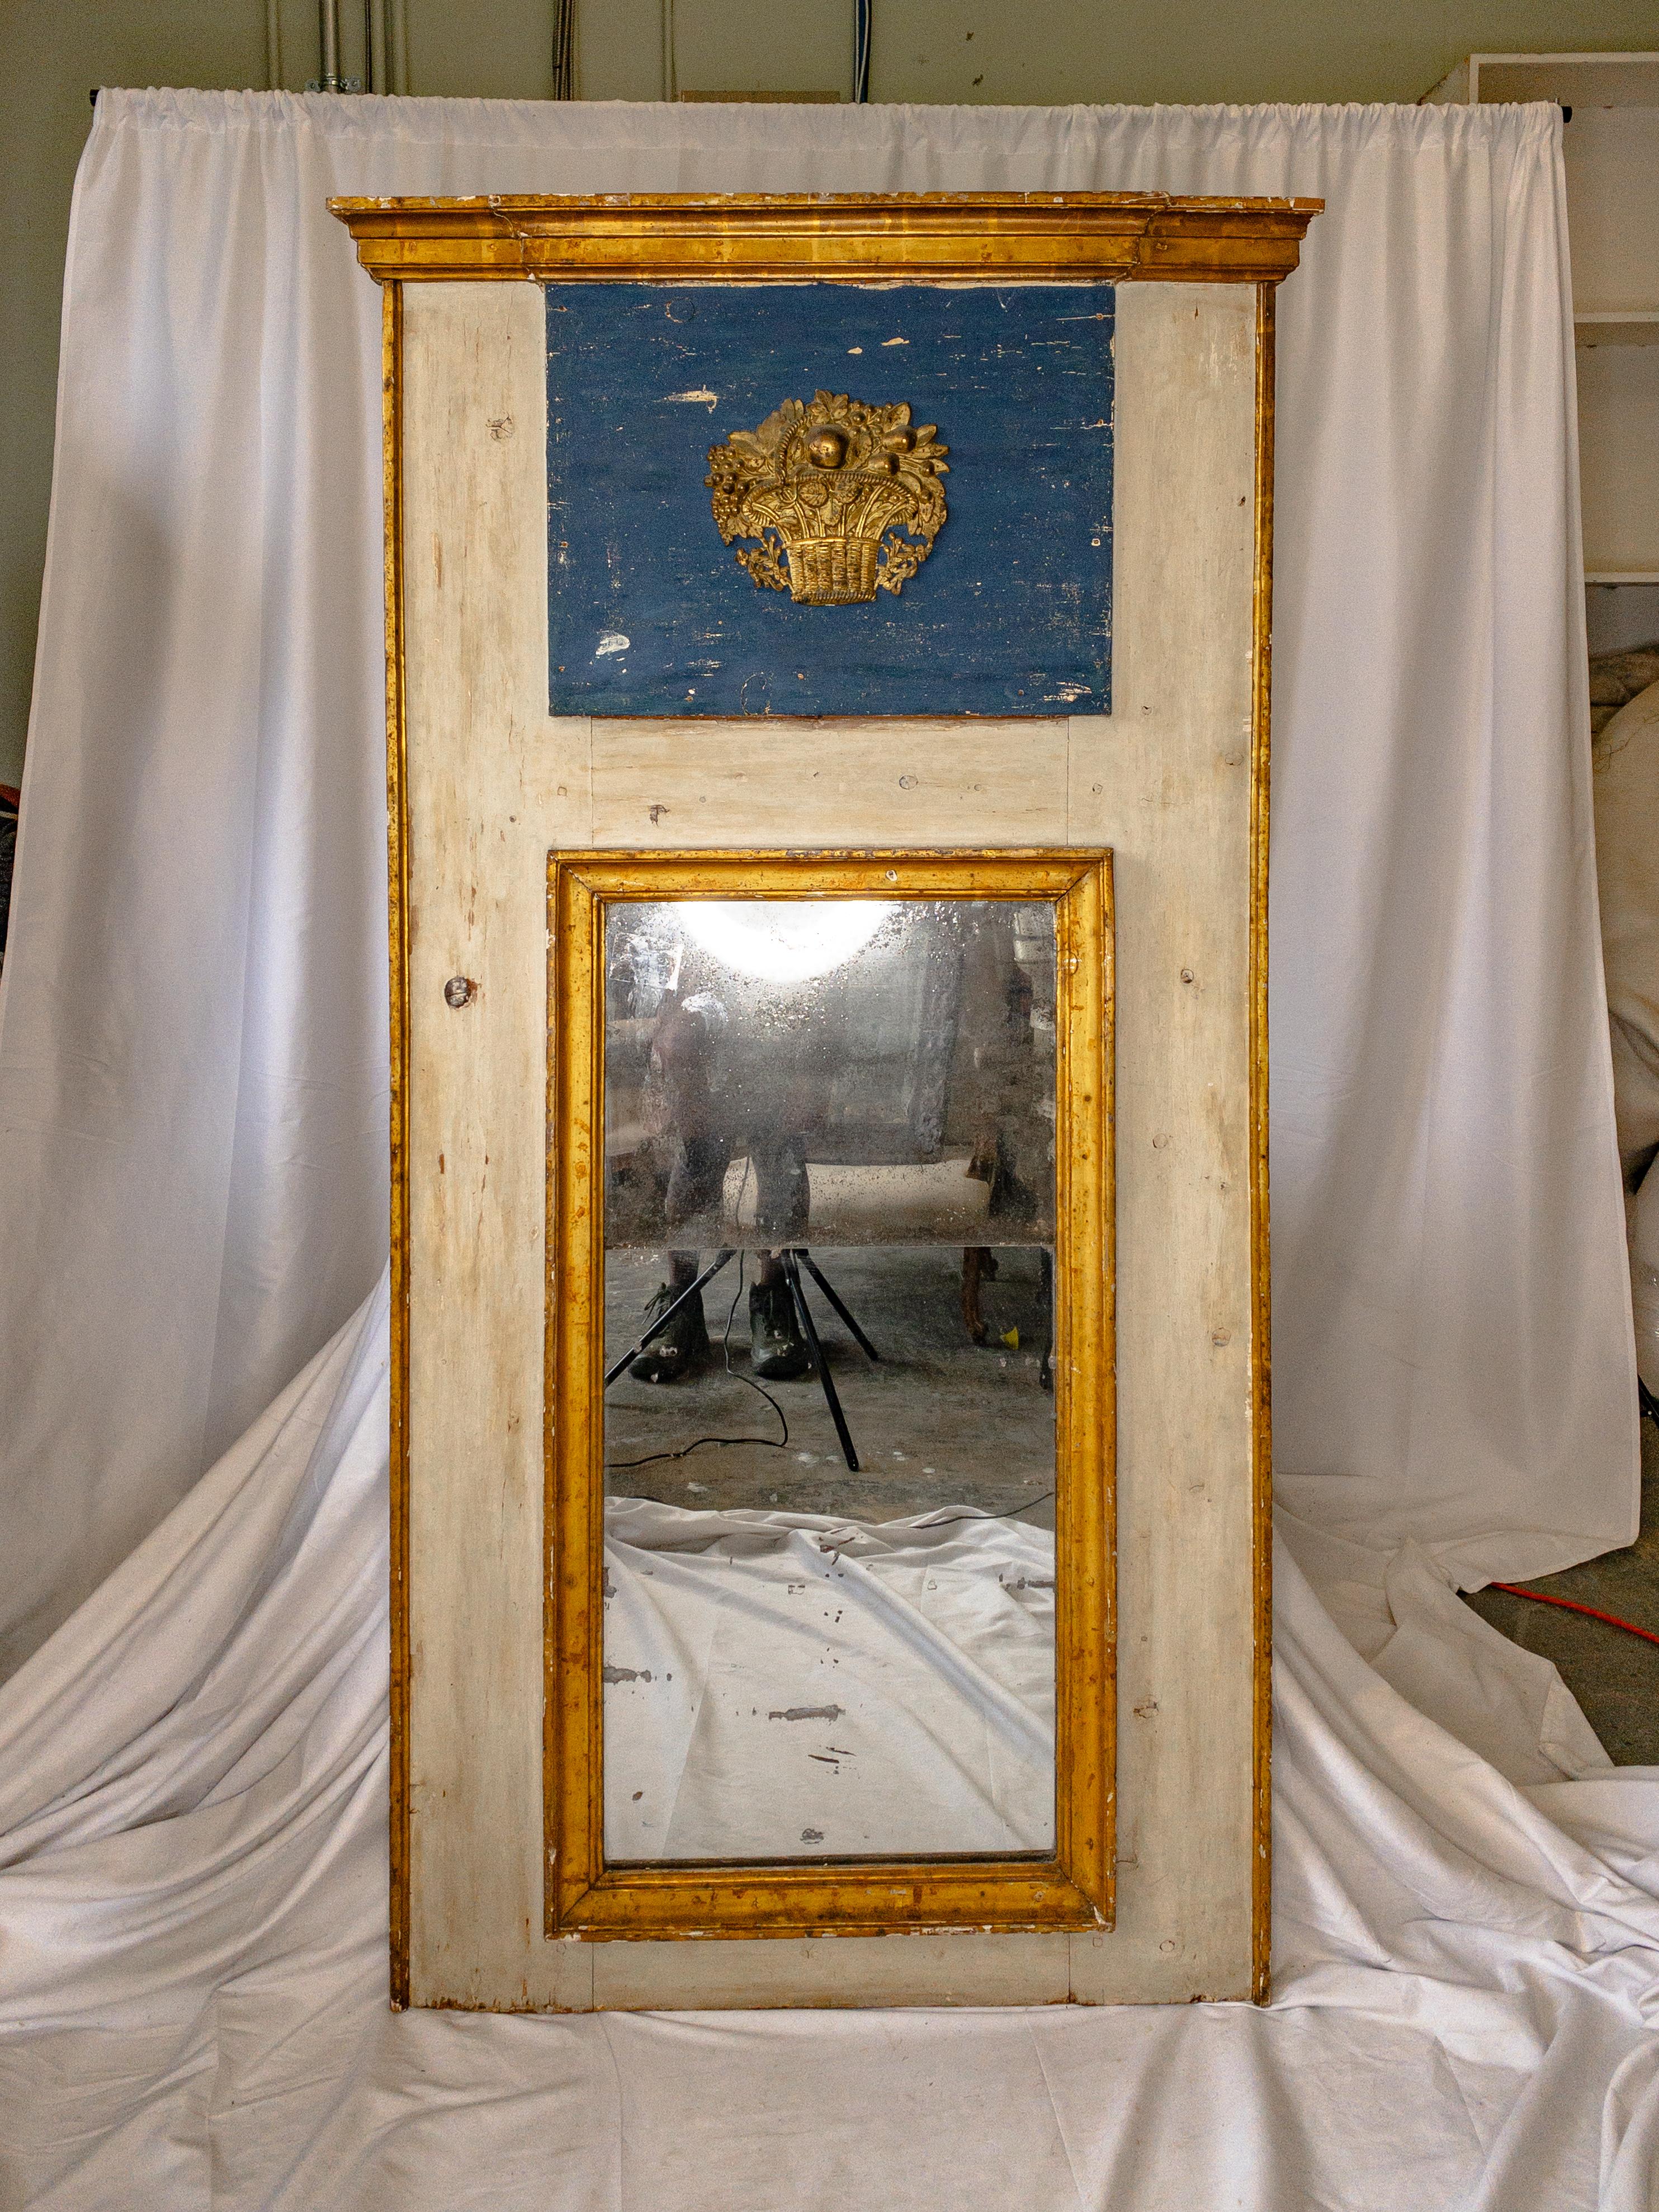 Dieser italienische Trumeau-Spiegel aus dem späten 18. Jahrhundert ist ein beeindruckendes Beispiel für neoklassische Eleganz. Seine langgestreckte Form, die in einem ruhigen, antikweißen Farbton lackiert ist, strahlt Anmut und Raffinesse aus. Der